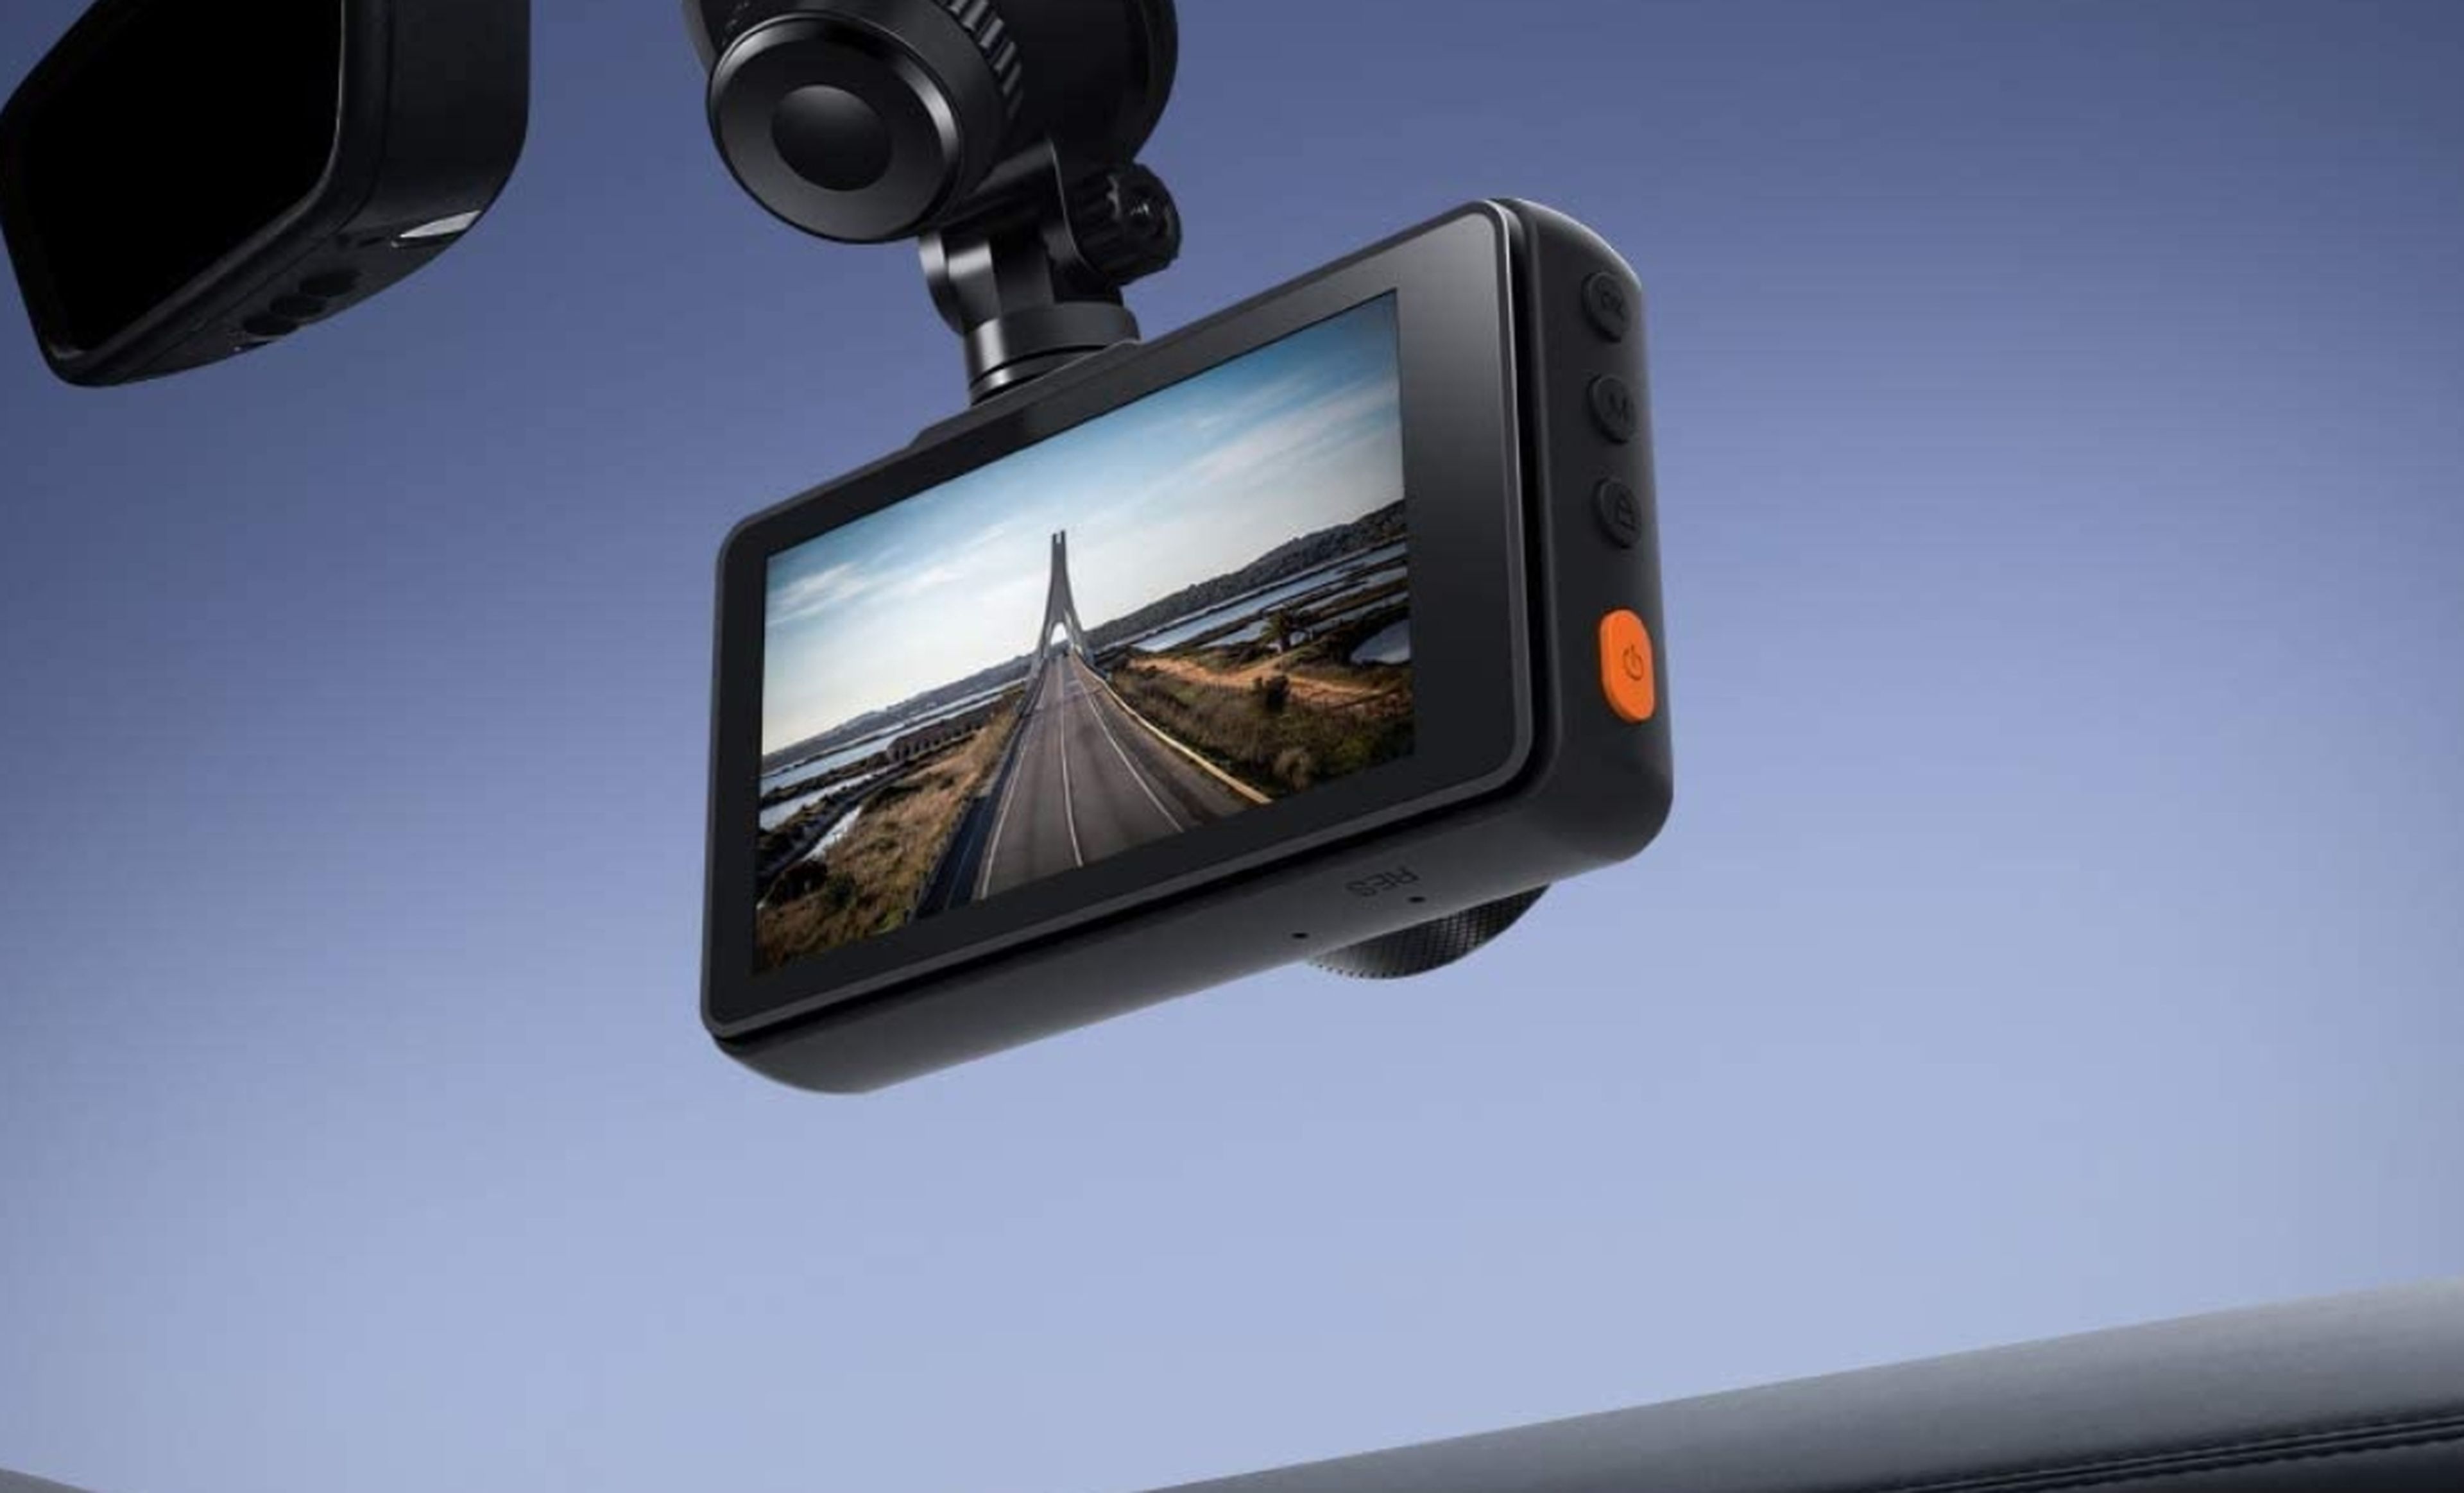 Las mejores Dash Cam o cámaras para coches ·